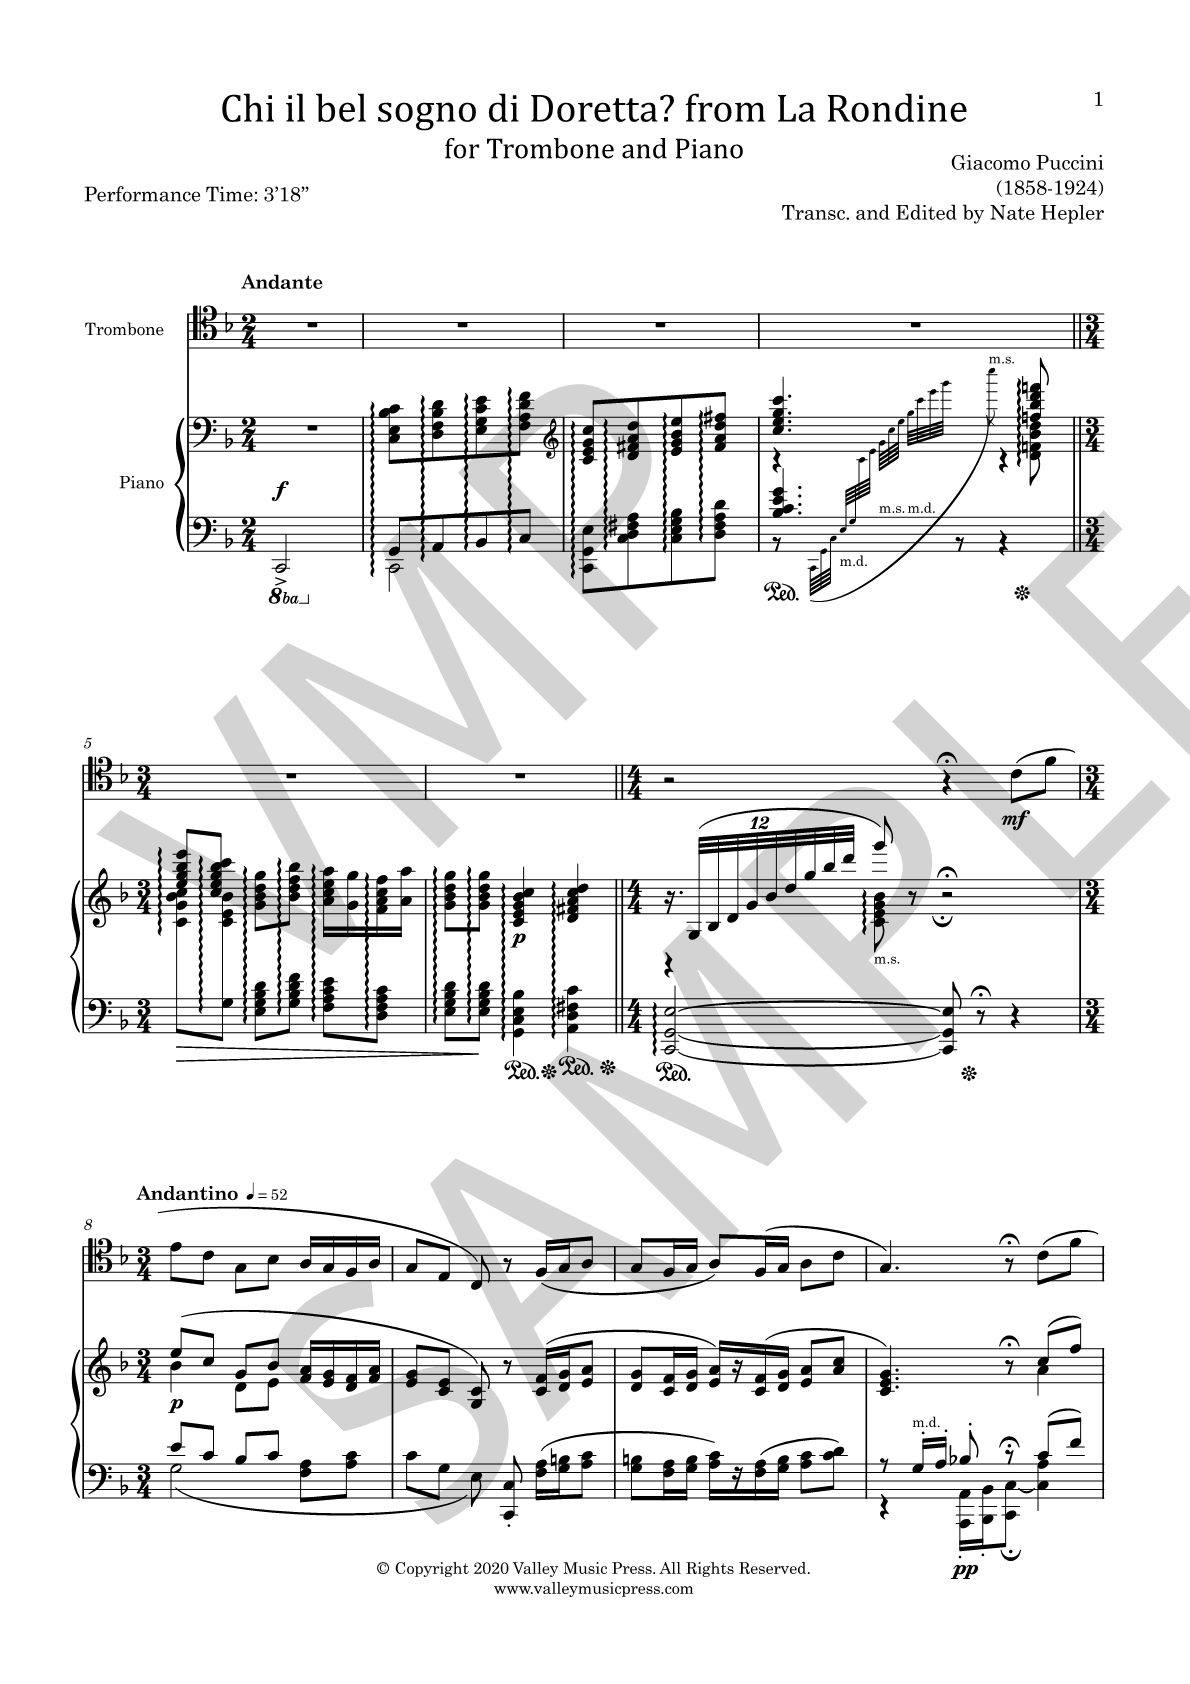 Puccini - Chi il bel sogno from La Rondine (Trb & Piano) - Click Image to Close